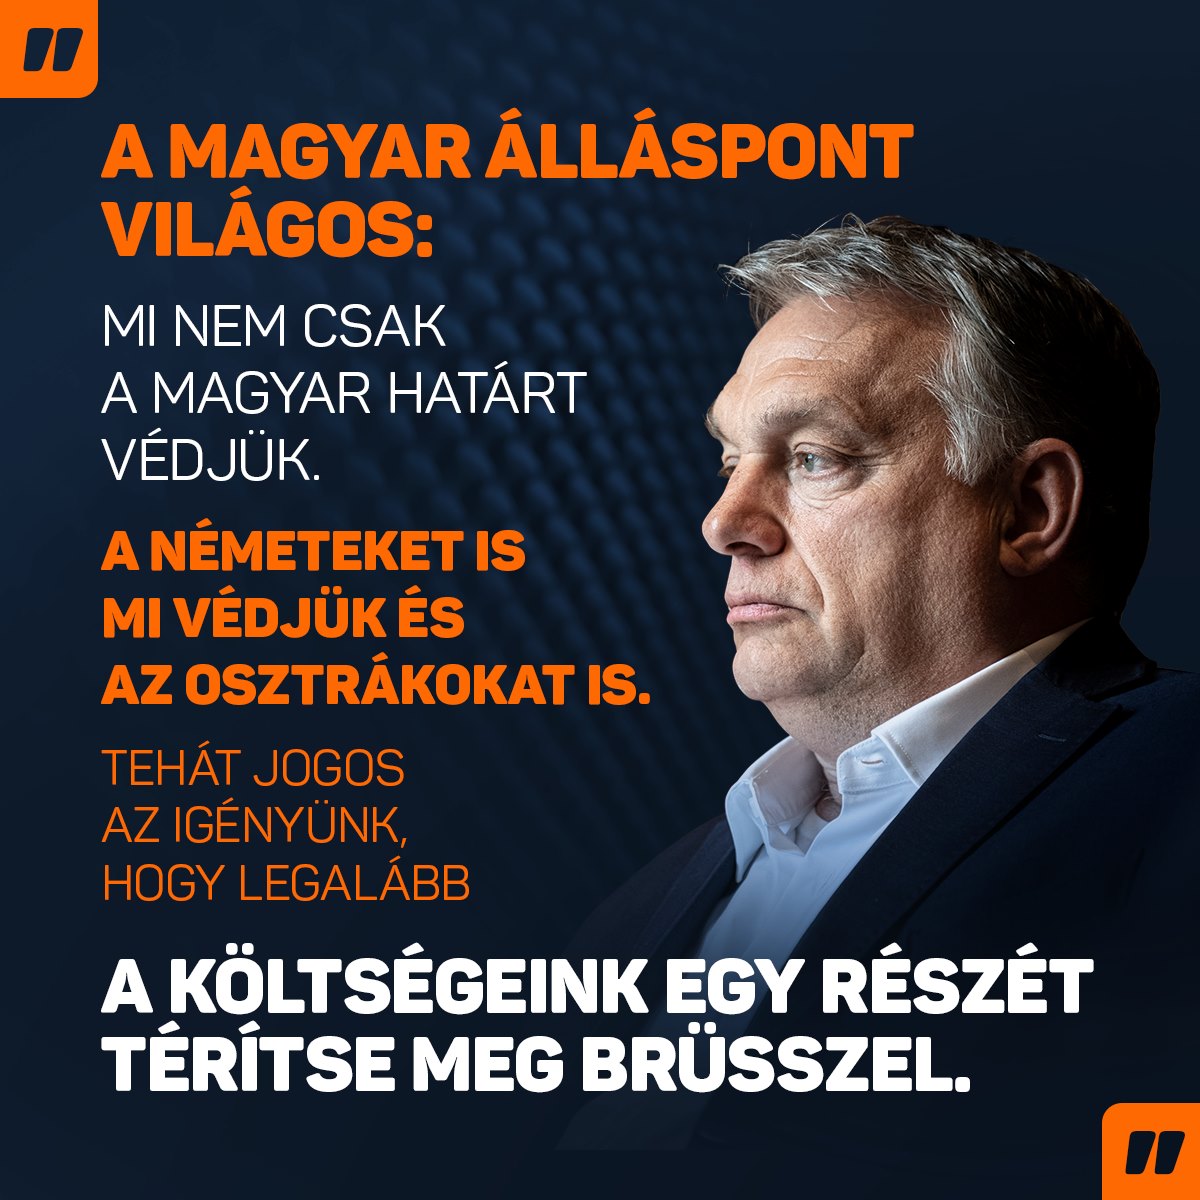 Jogos elvárás, hogy Brüsszel támogassa anyagilag a határvédelmet. Hat éve harcolok ezért, még nem nyertük meg ezt a küzdelmet, de sokkal közelebb vagyok hozzá, mint bármikor voltam – jelentette ki Orbán Viktor a Kossuth Rádióban.